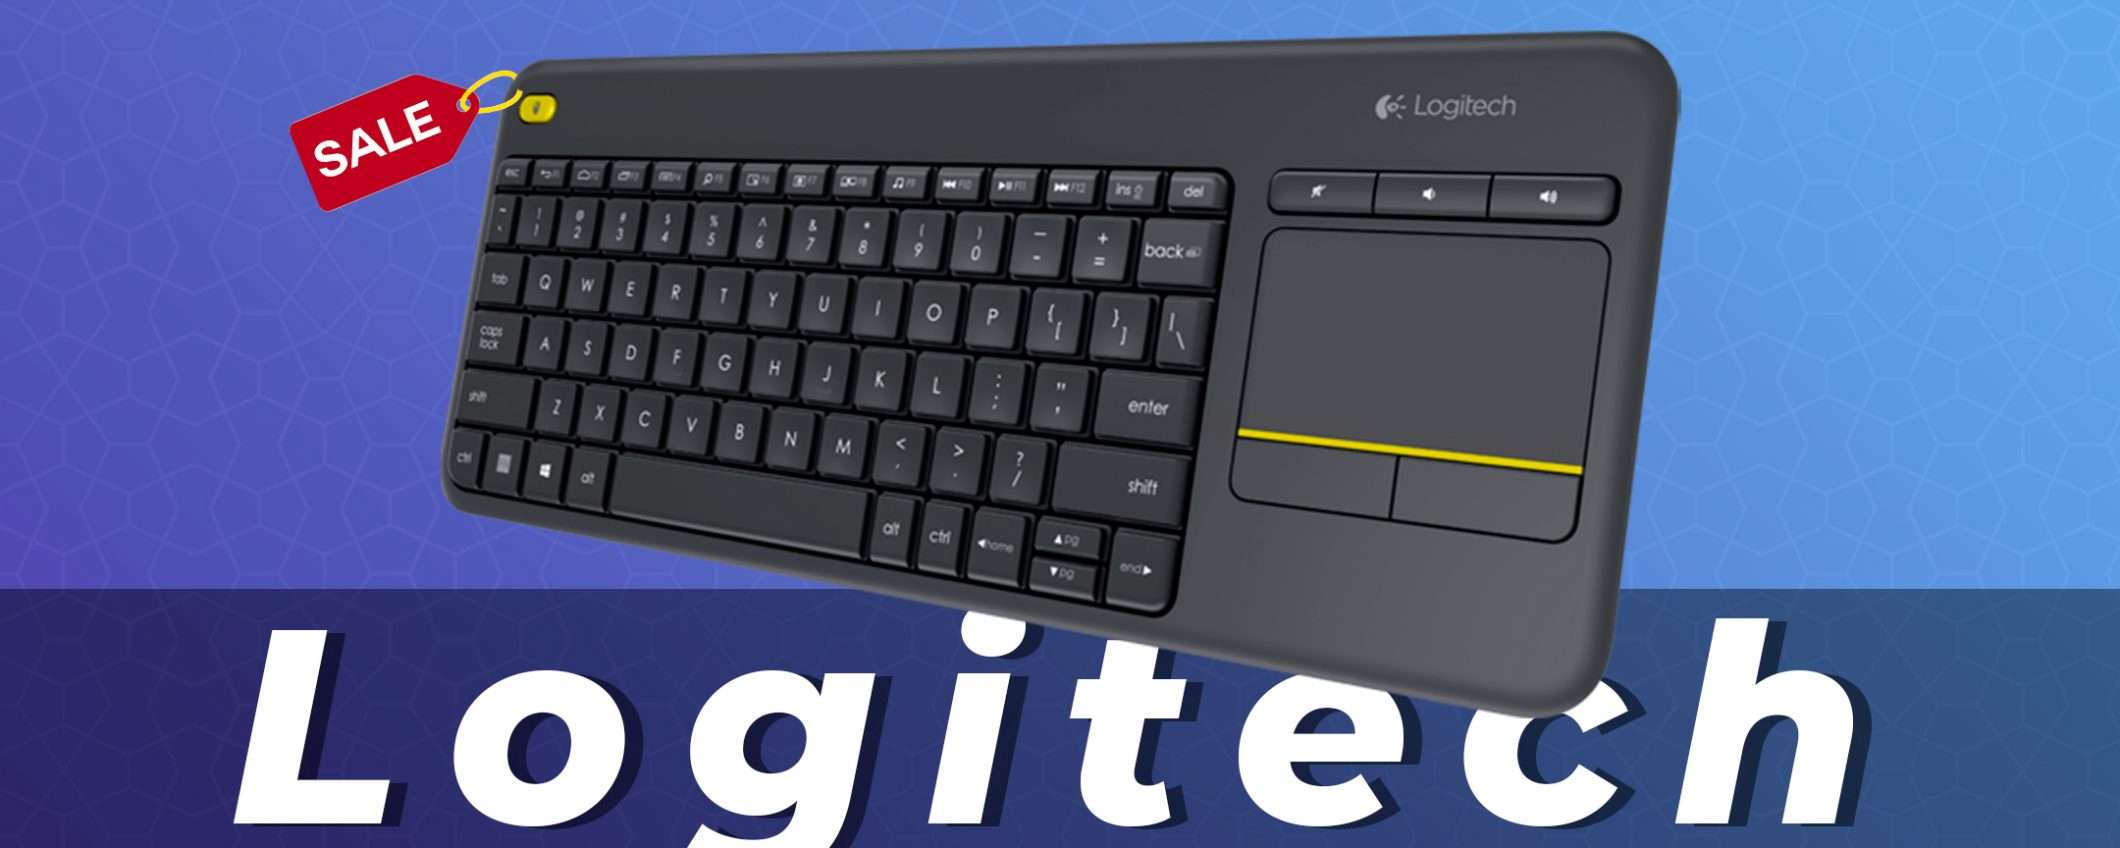 Logitech K400: tastiera con touchpad al 50% di sconto| Offerte Amazon